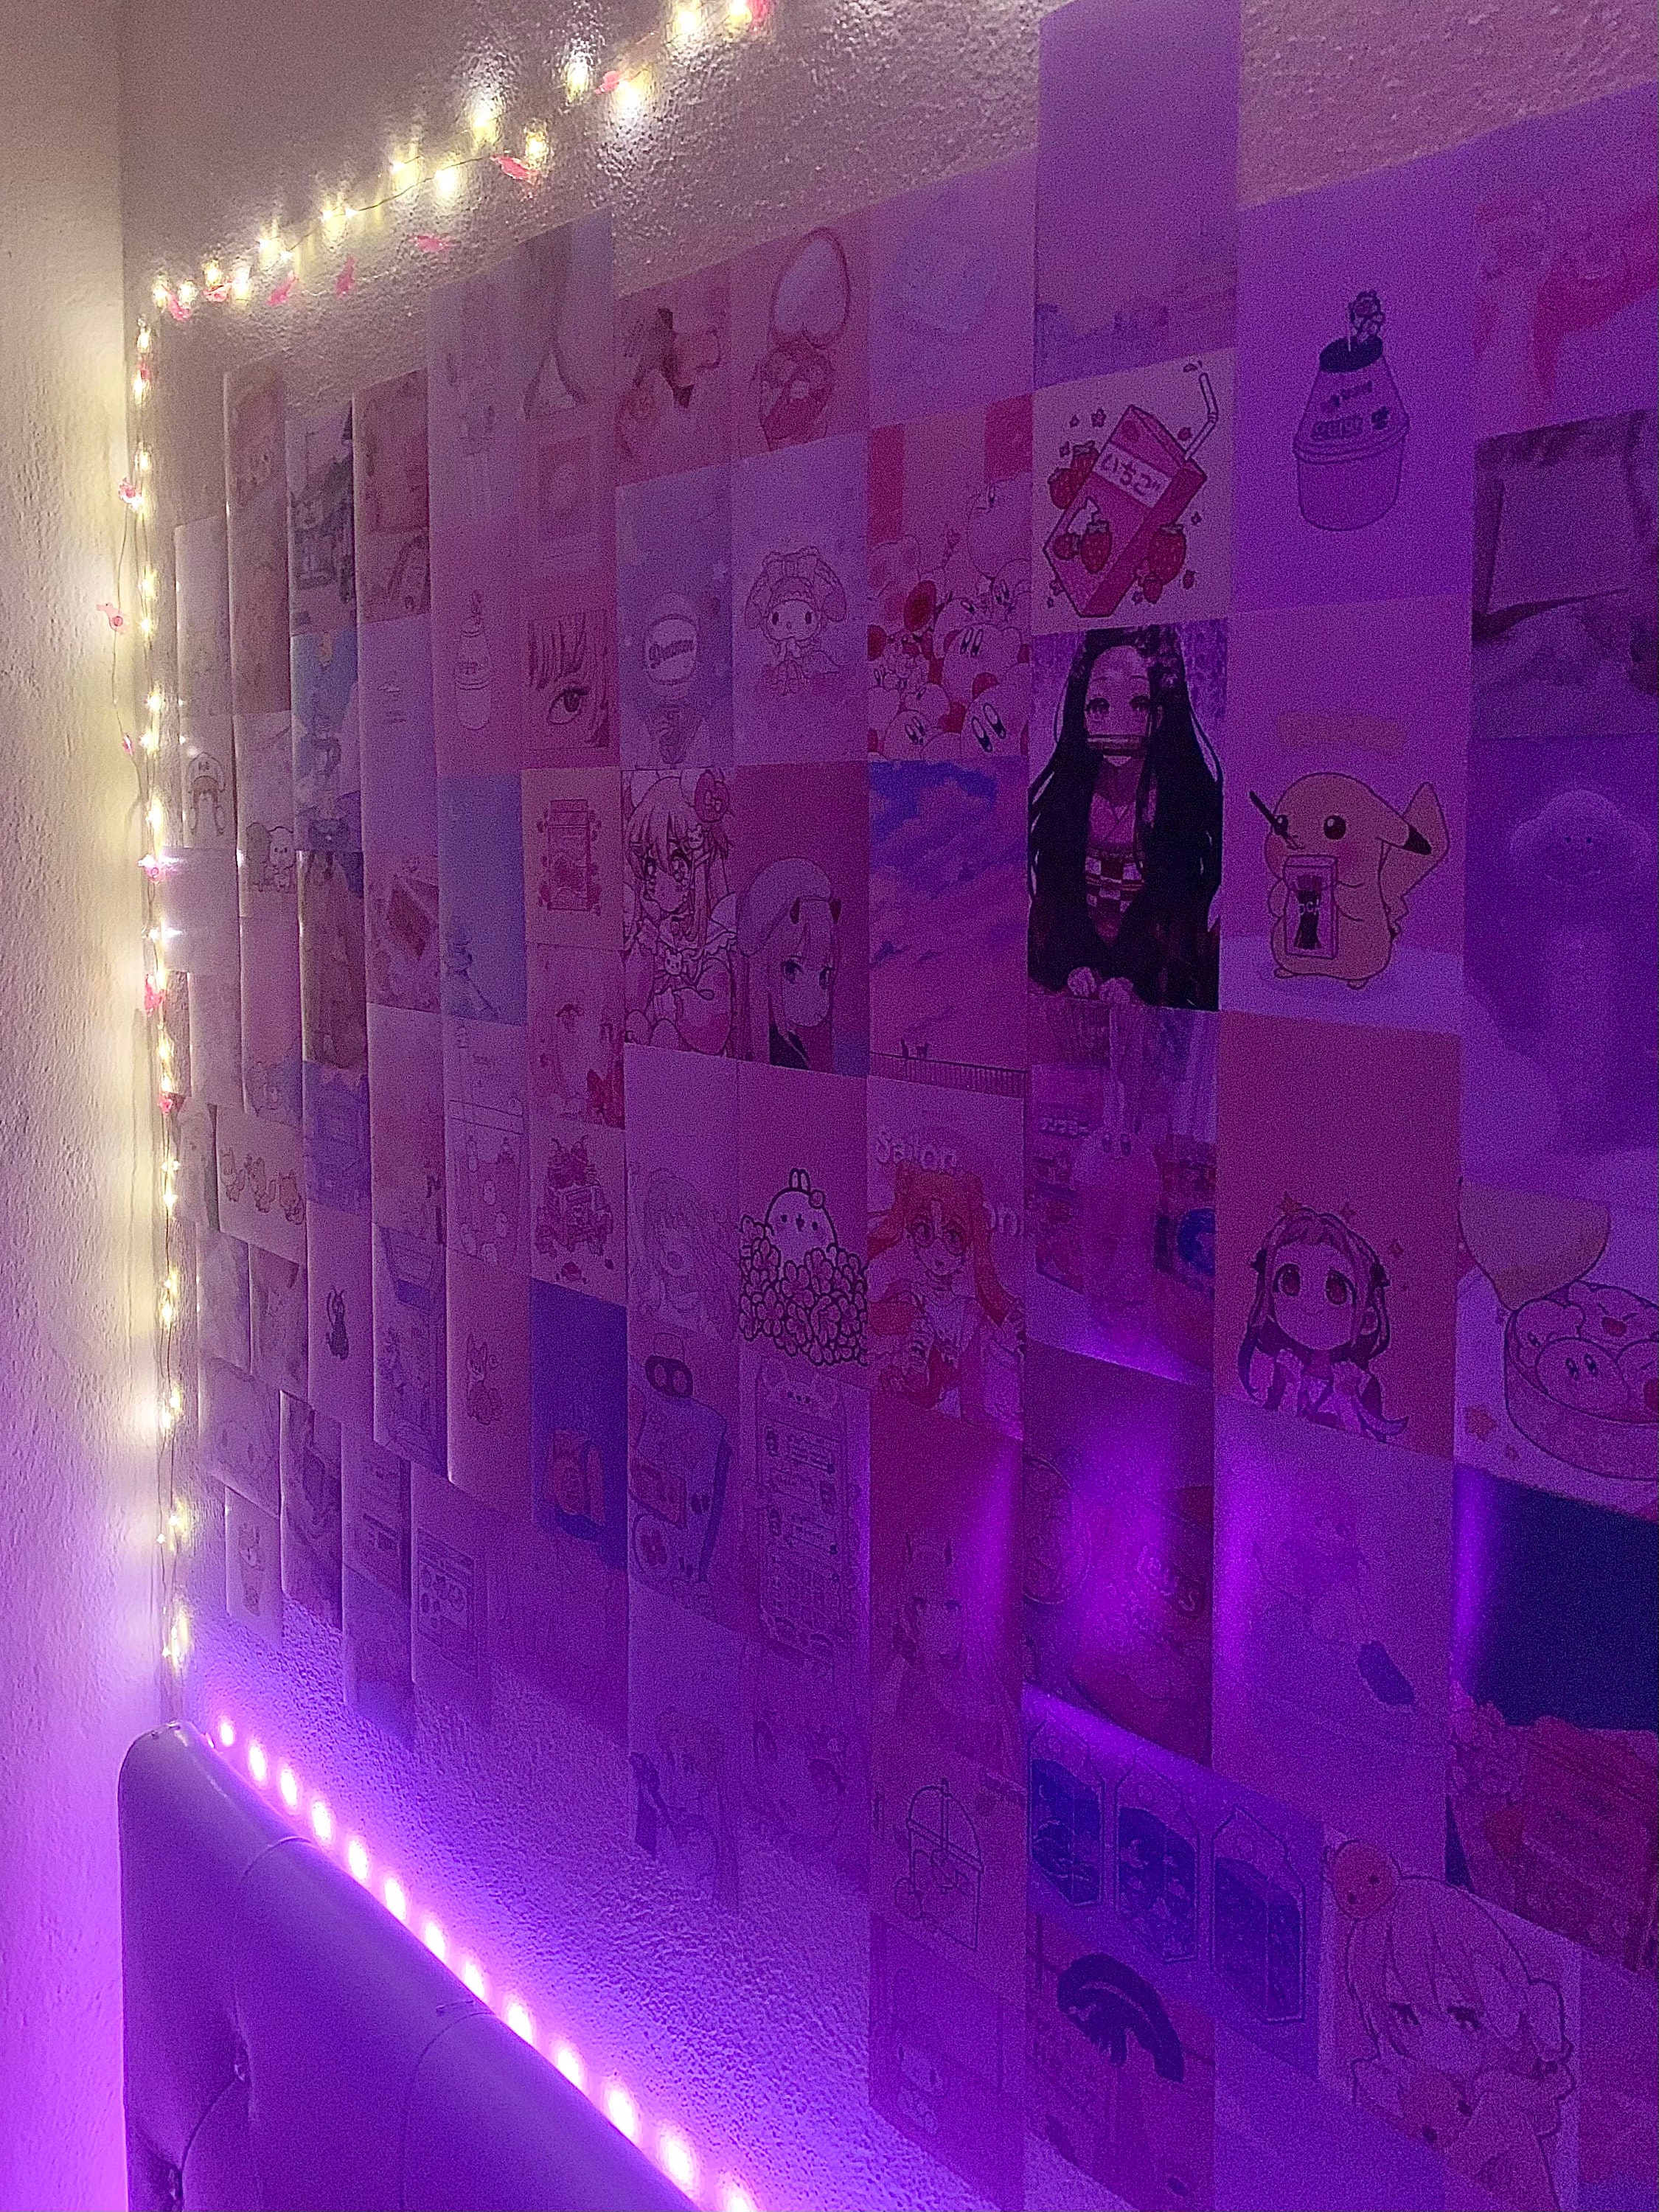 Kawaii/Anime Aesthetic Room Decor Photo Wall Collage Kawaii | Etsy